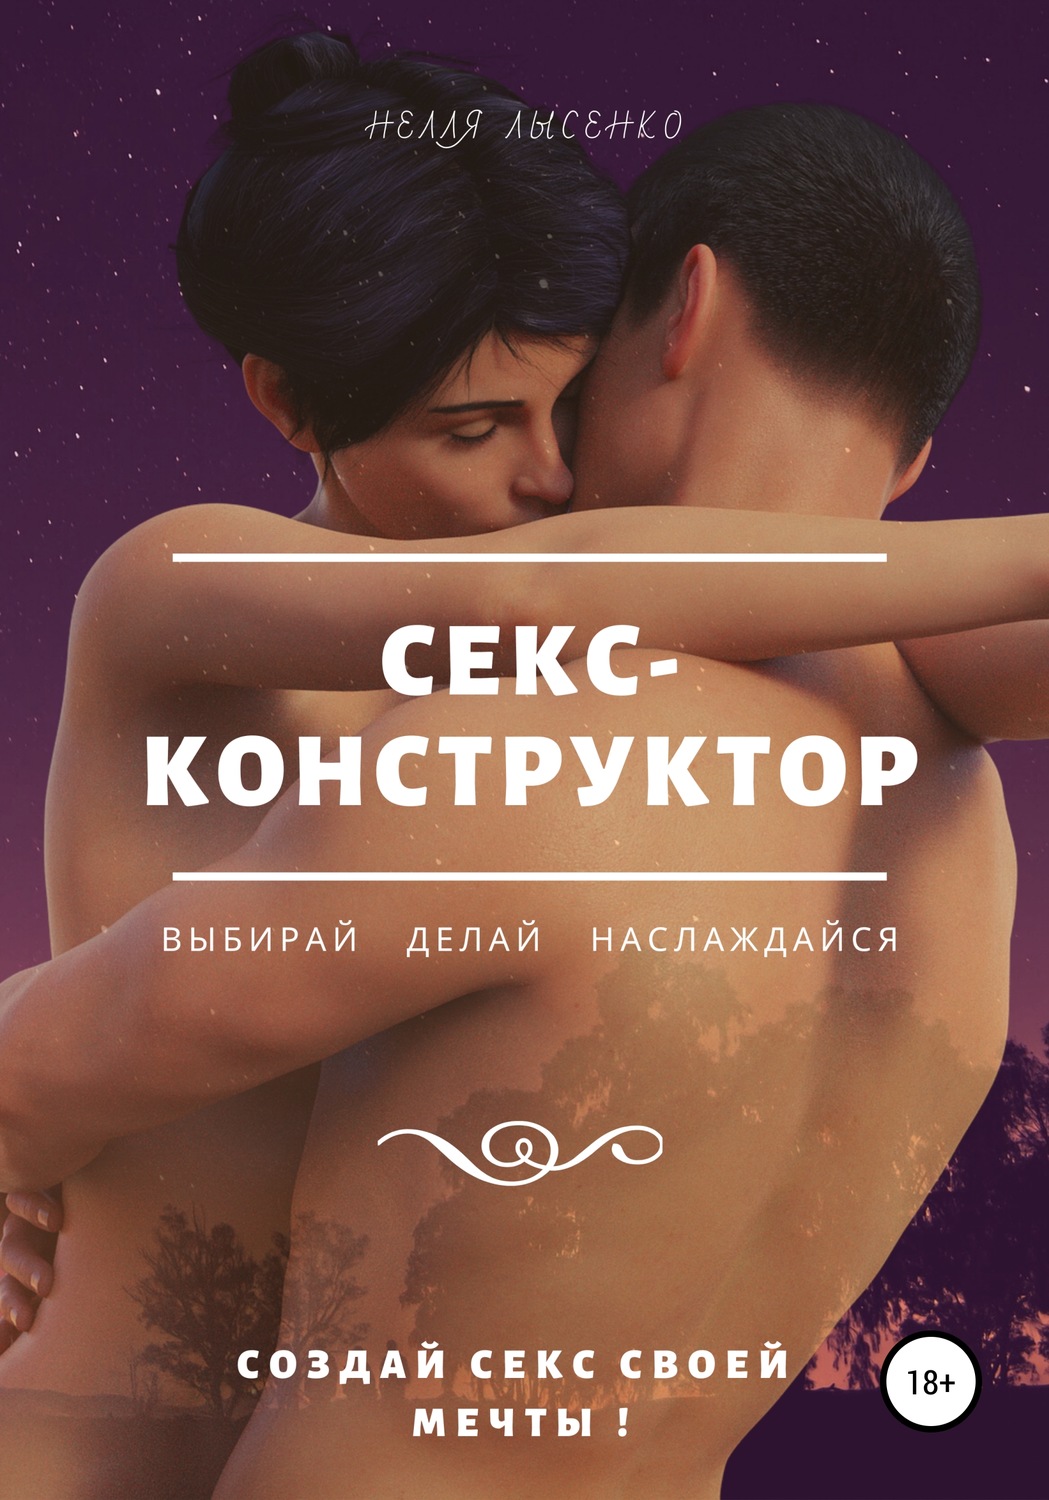 Смех во время секса: как реагировать, чтобы не обидеть друг друга - optnp.ru